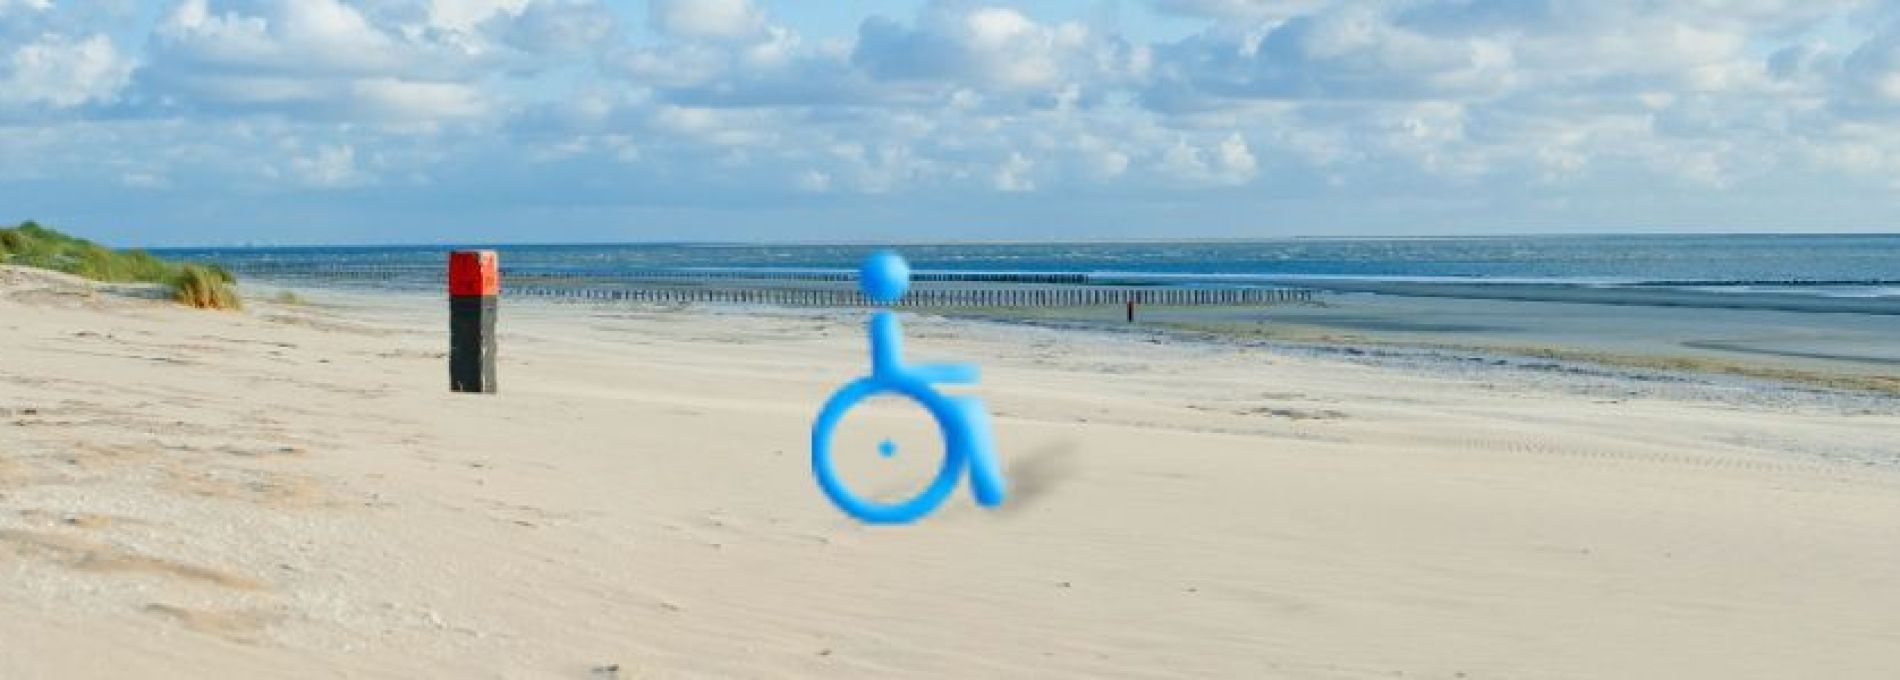 Häufig gestelte Fragen über Urlaub im Rollstuhl auf Ameland - VVV Ameland.